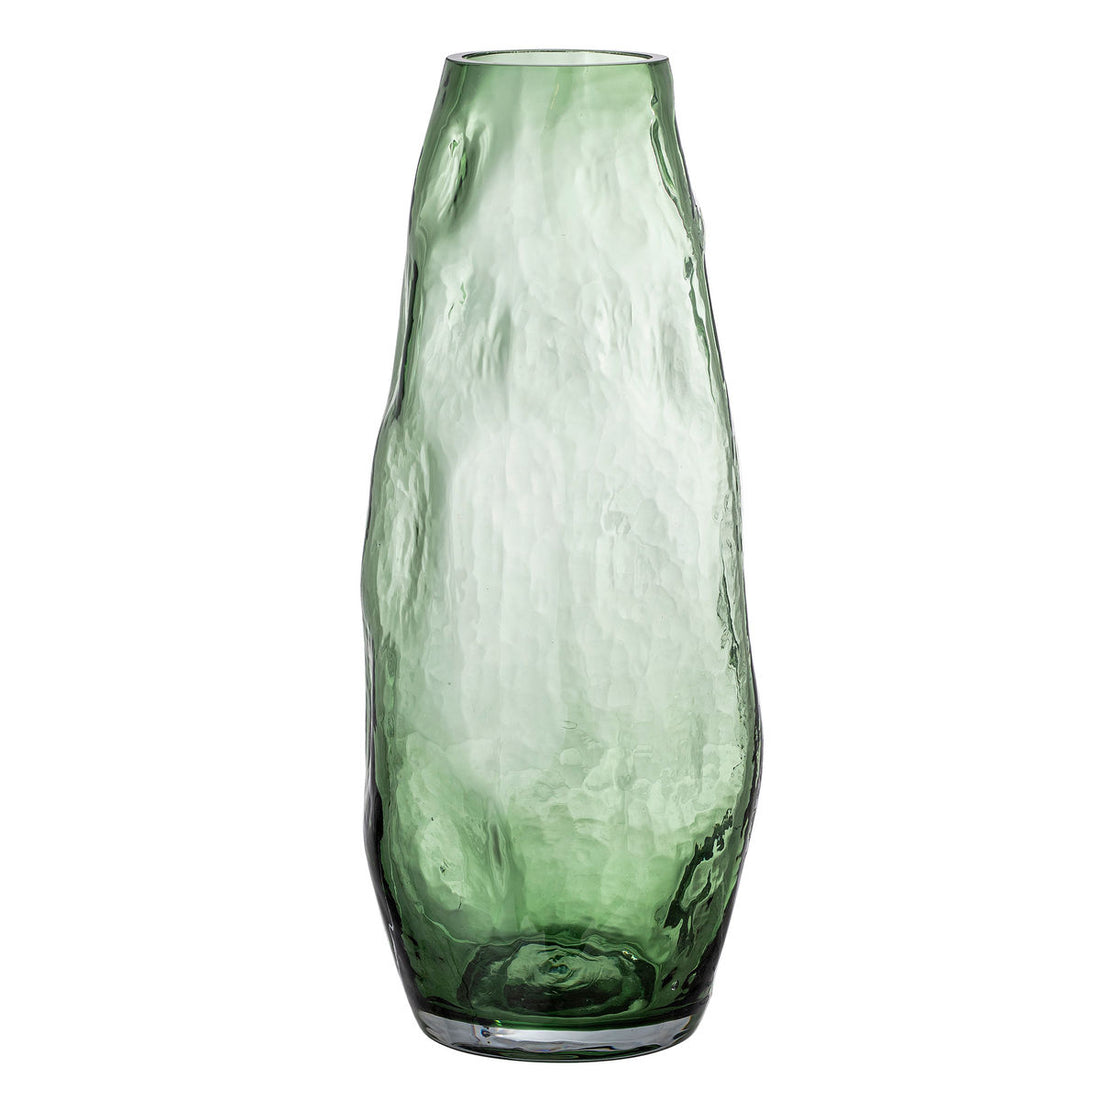 Bloomingville Adufe maljakko, Grøn, Glas